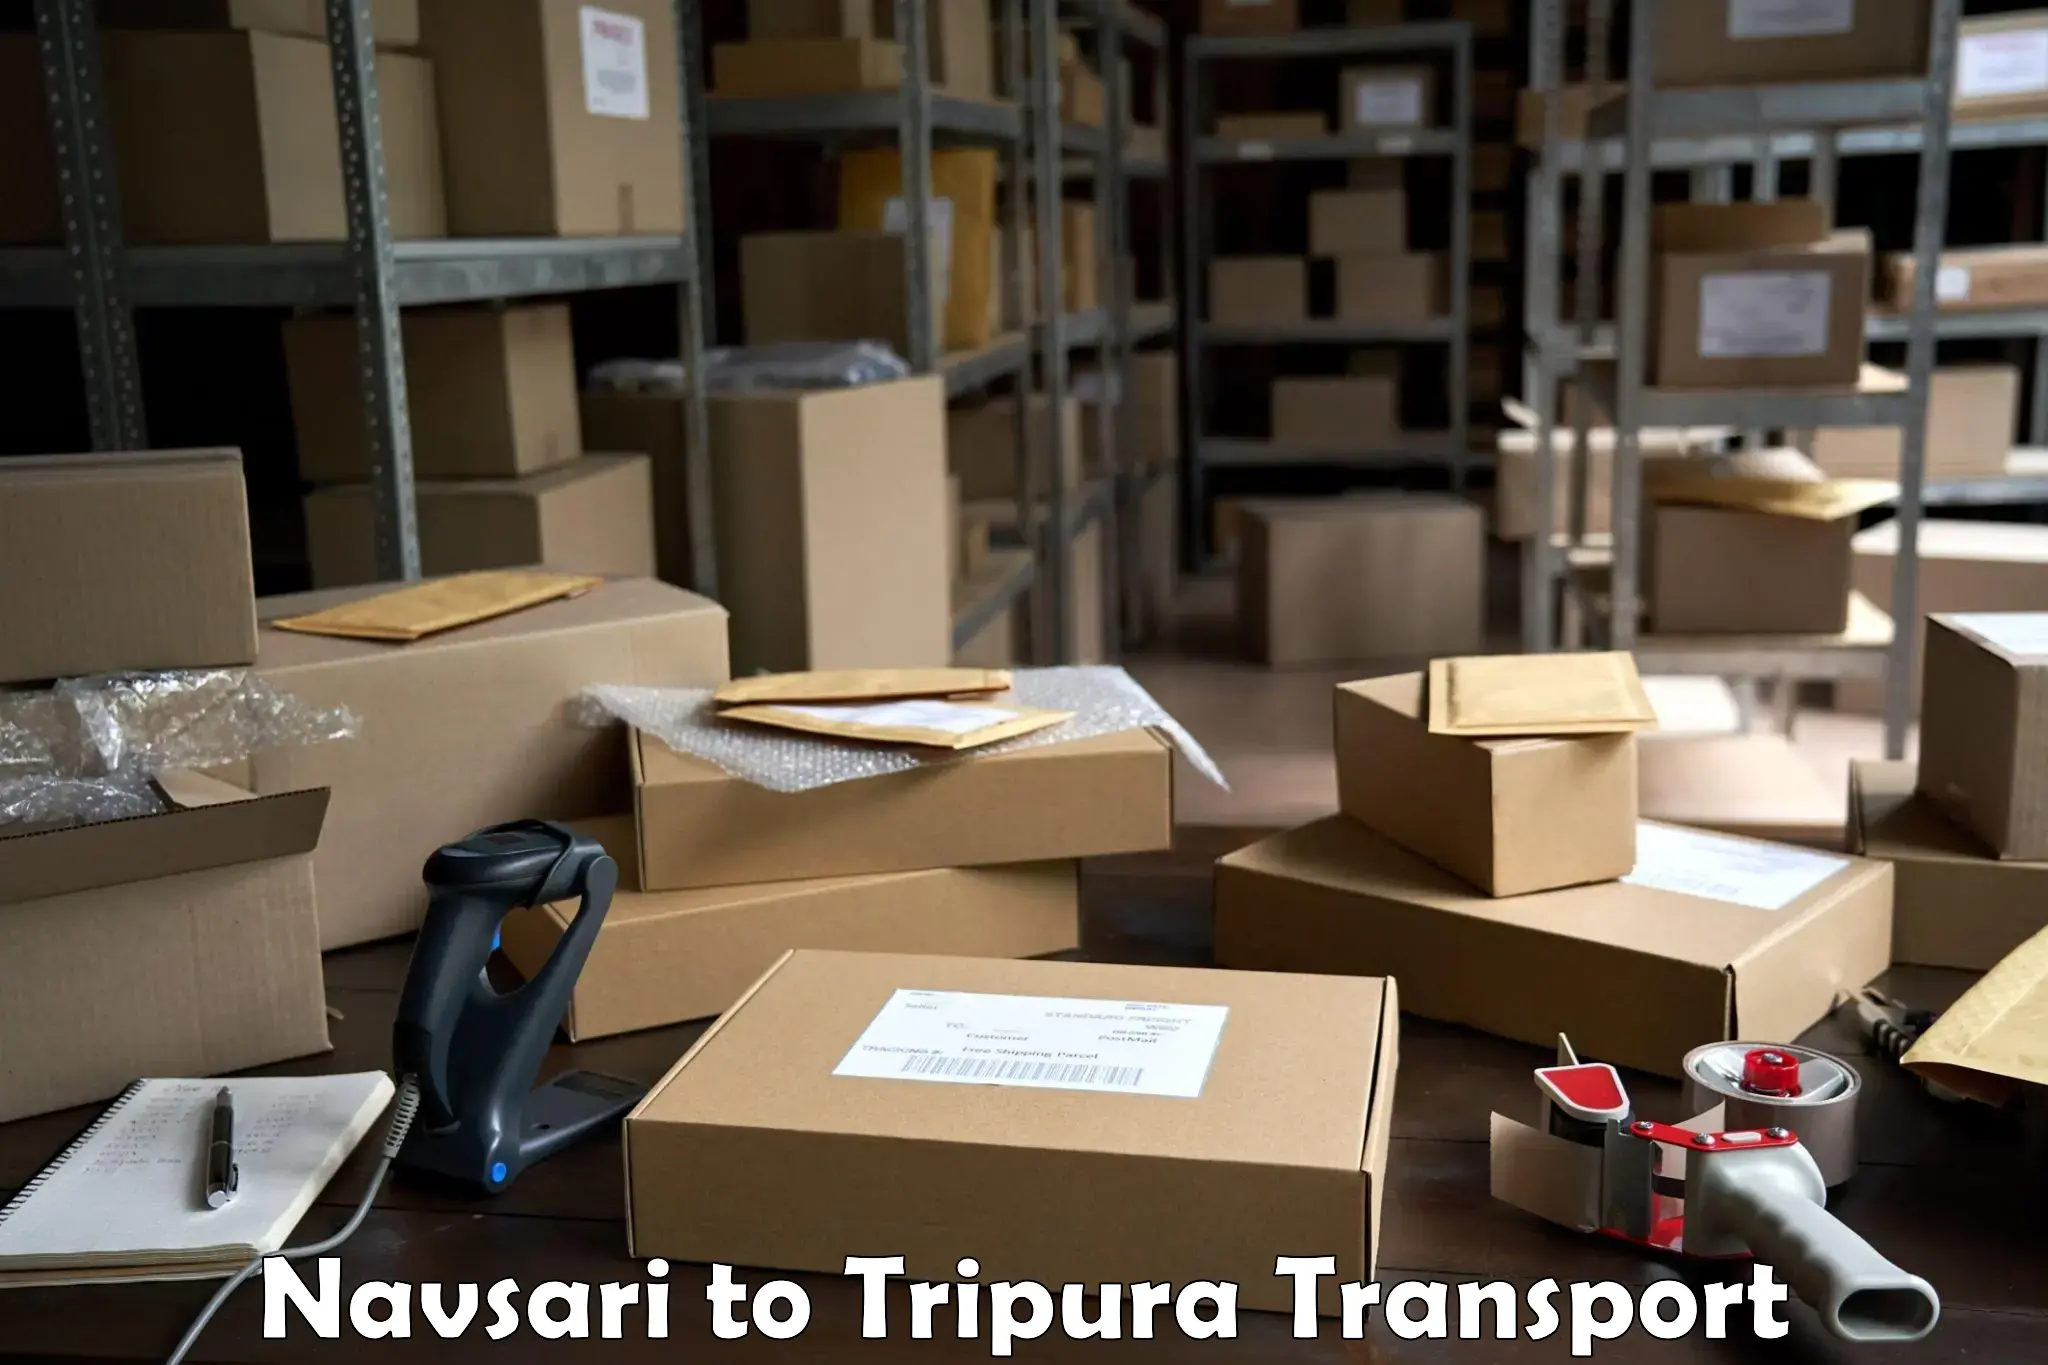 Delivery service Navsari to Tripura